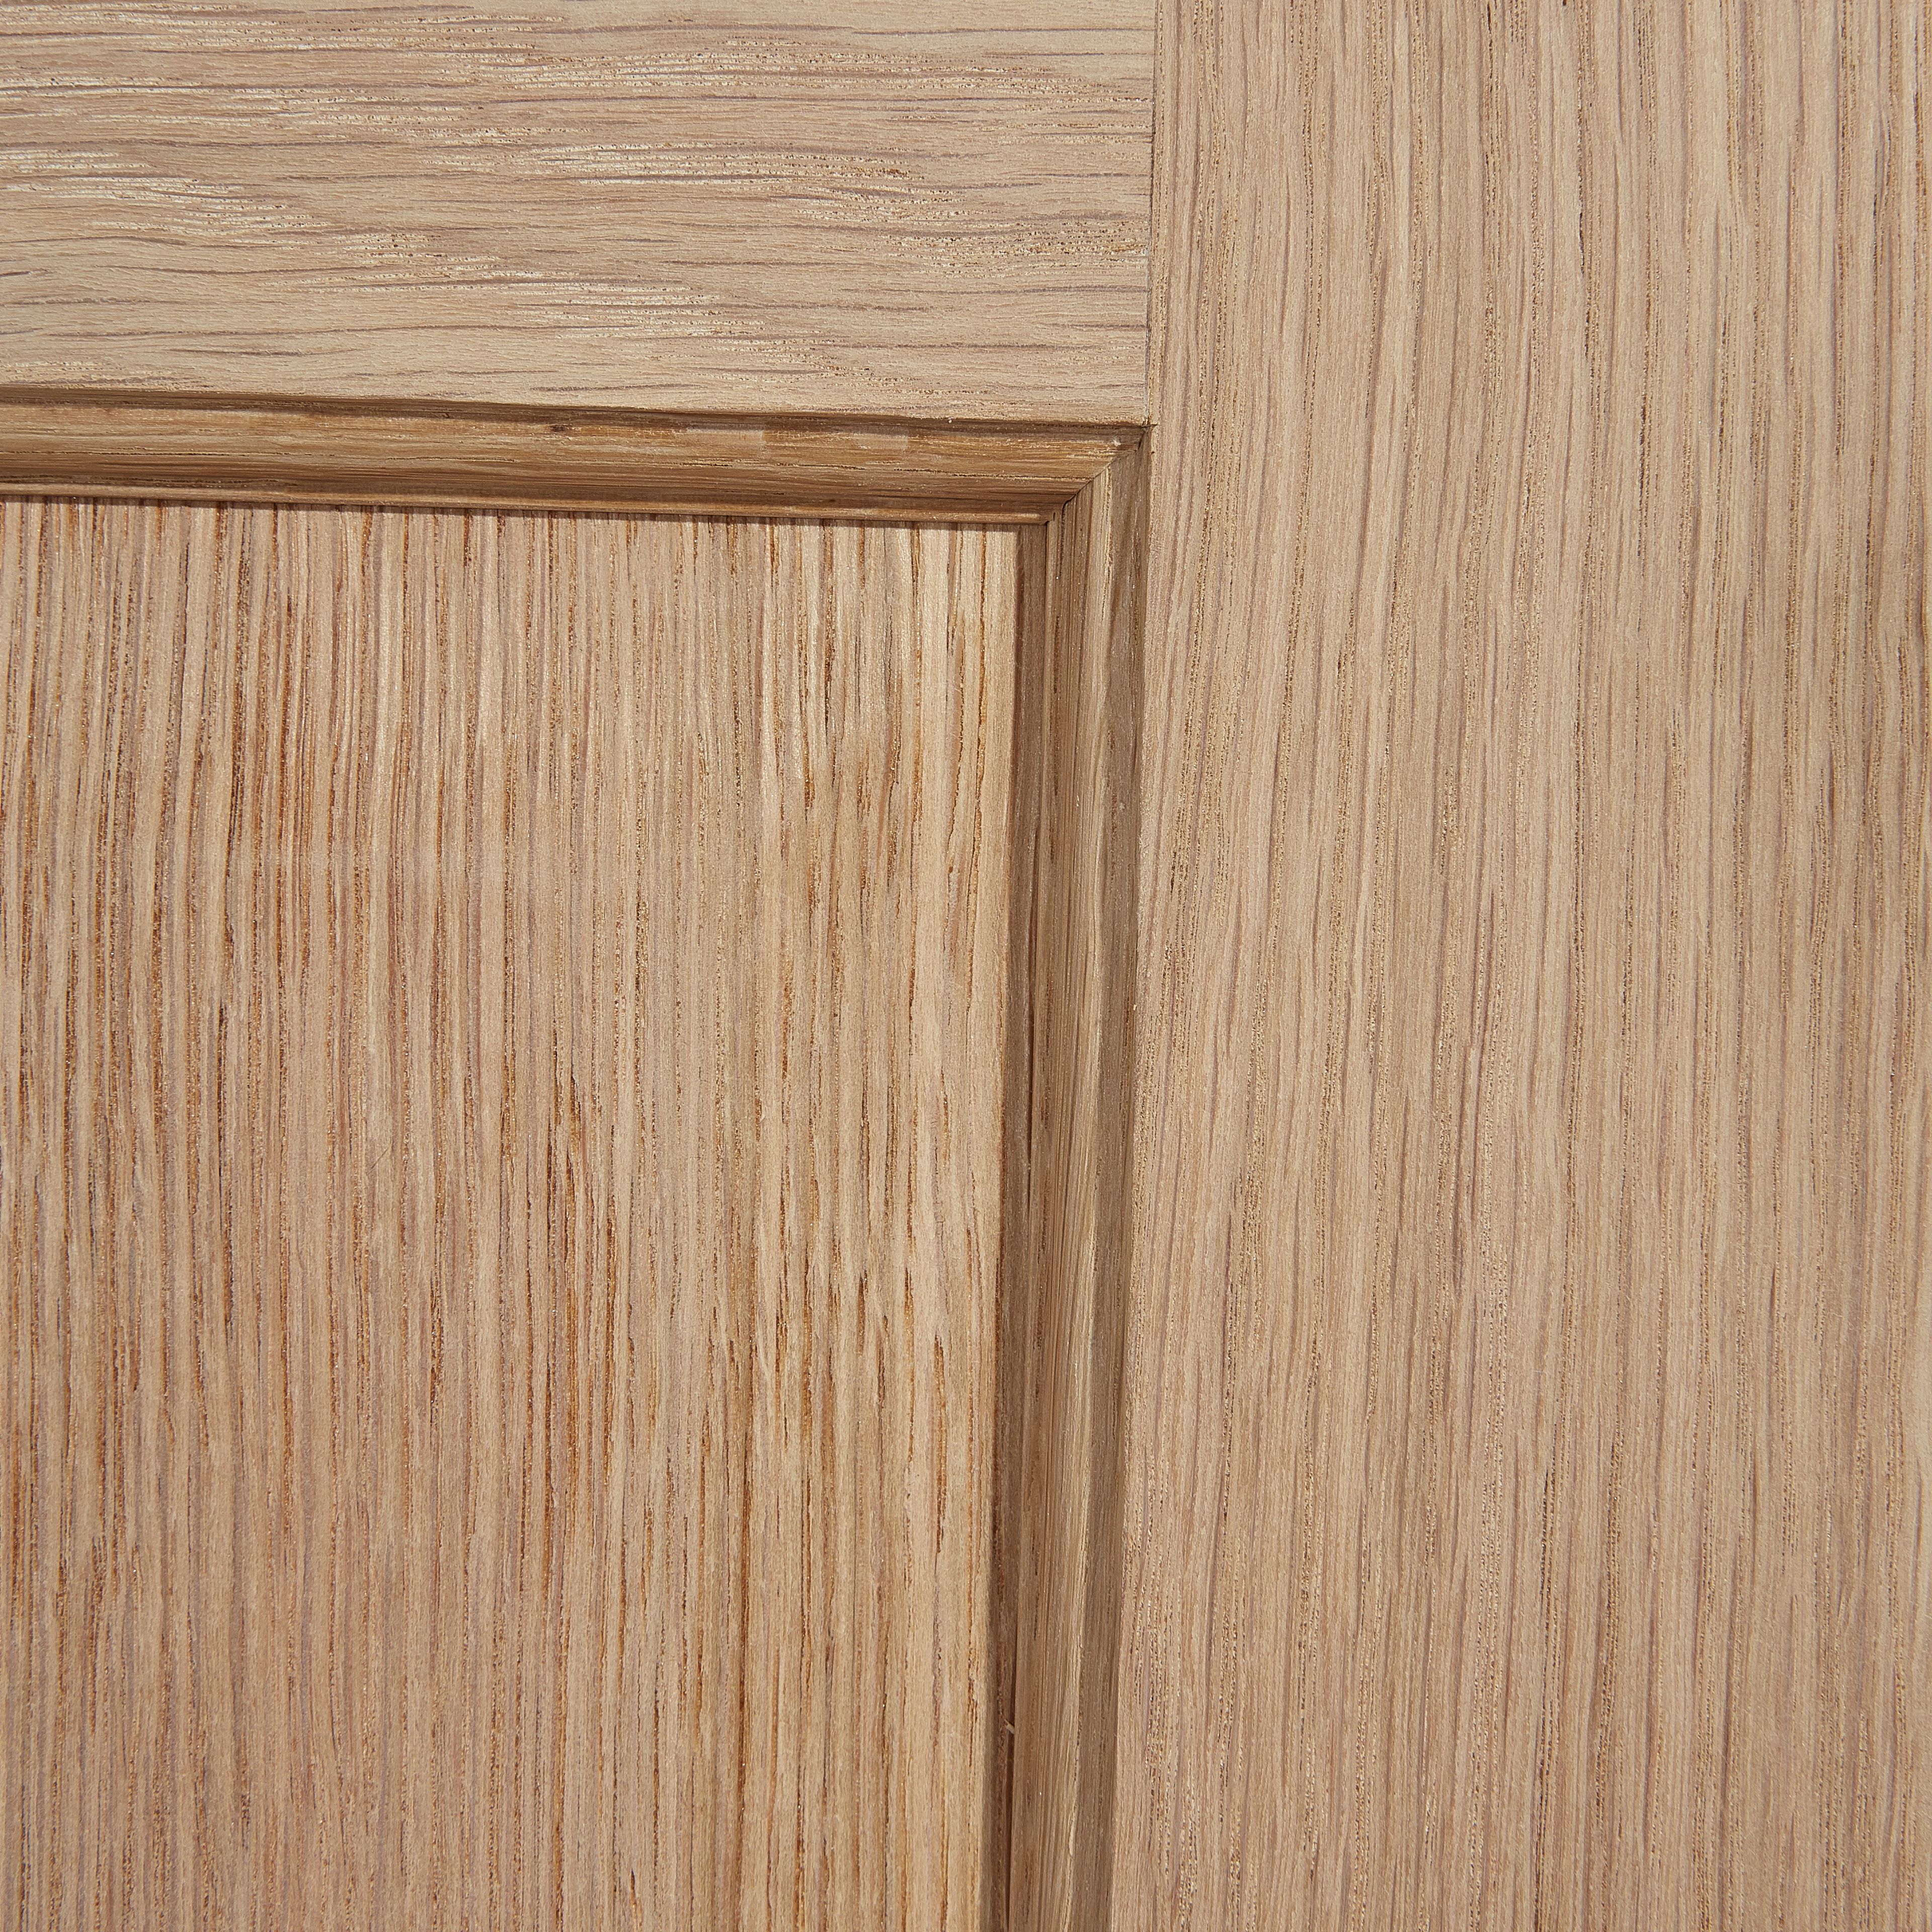 Geom 4 panel Unglazed Oak veneer Internal Door, (H)2040mm (W)726mm (T)40mm